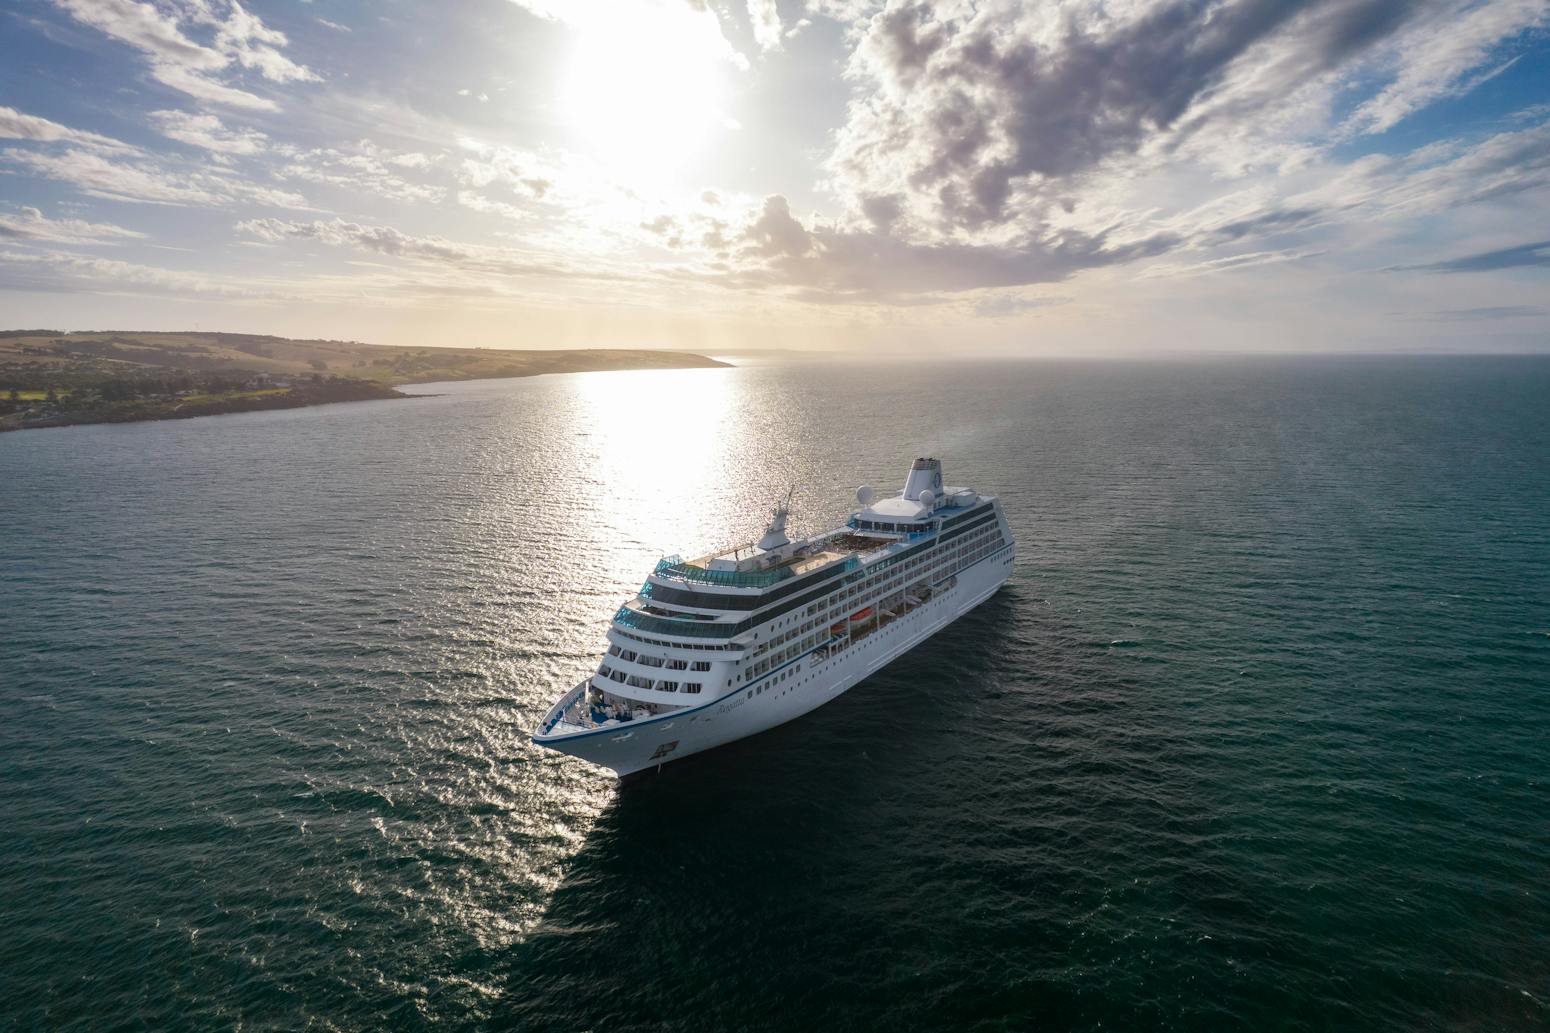 Oceania Cruises MS Regatta